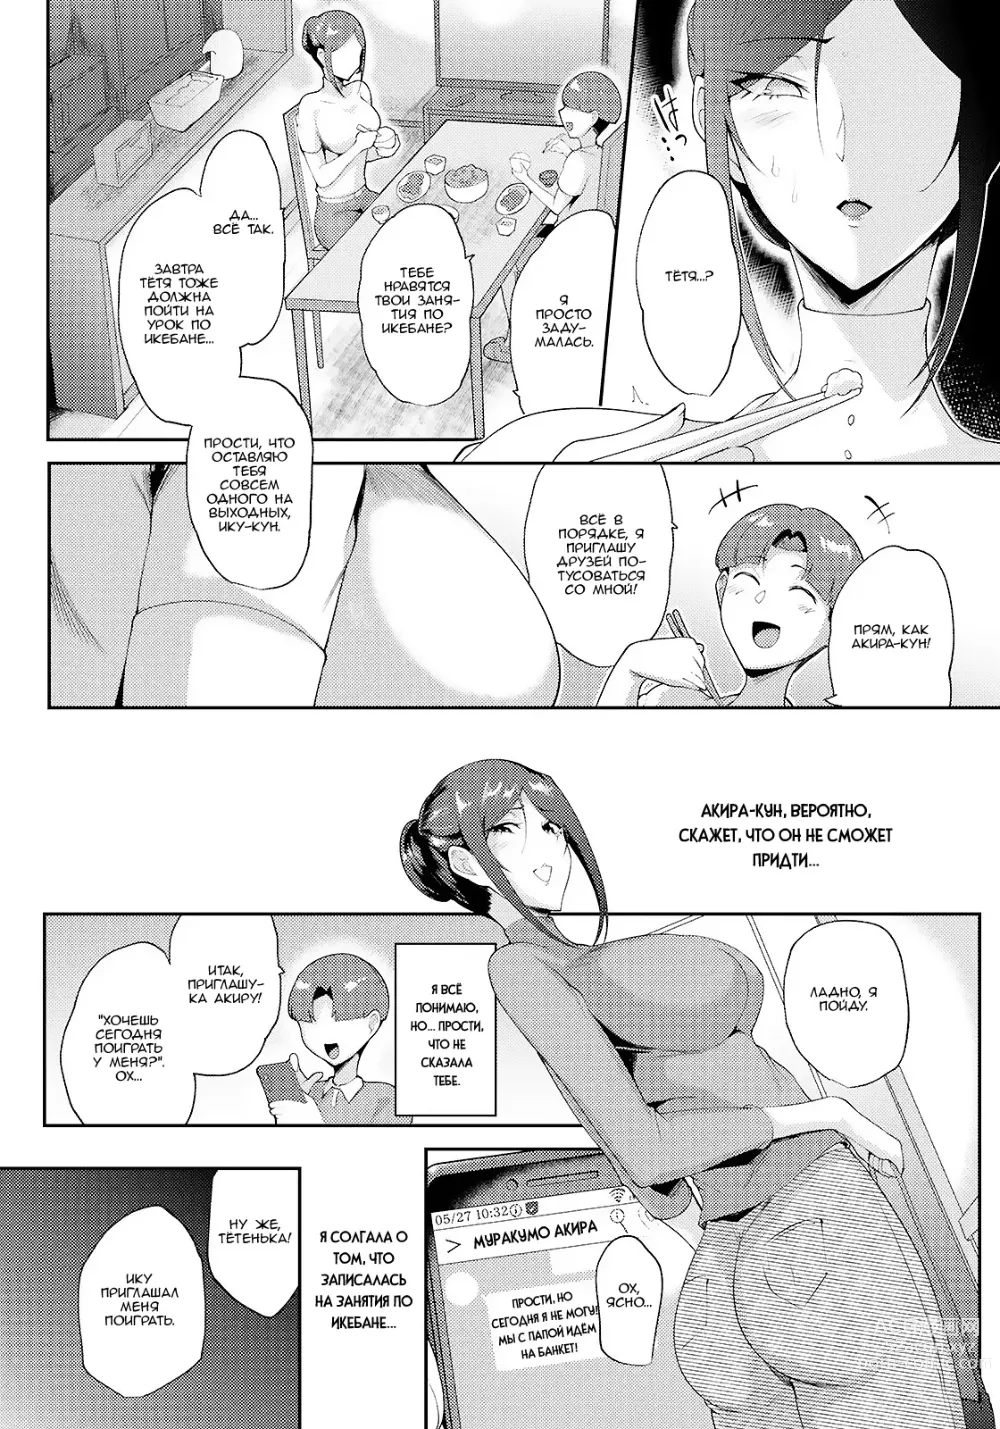 Page 9 of manga Чудовищные отец и сын заставили починиться шантажом